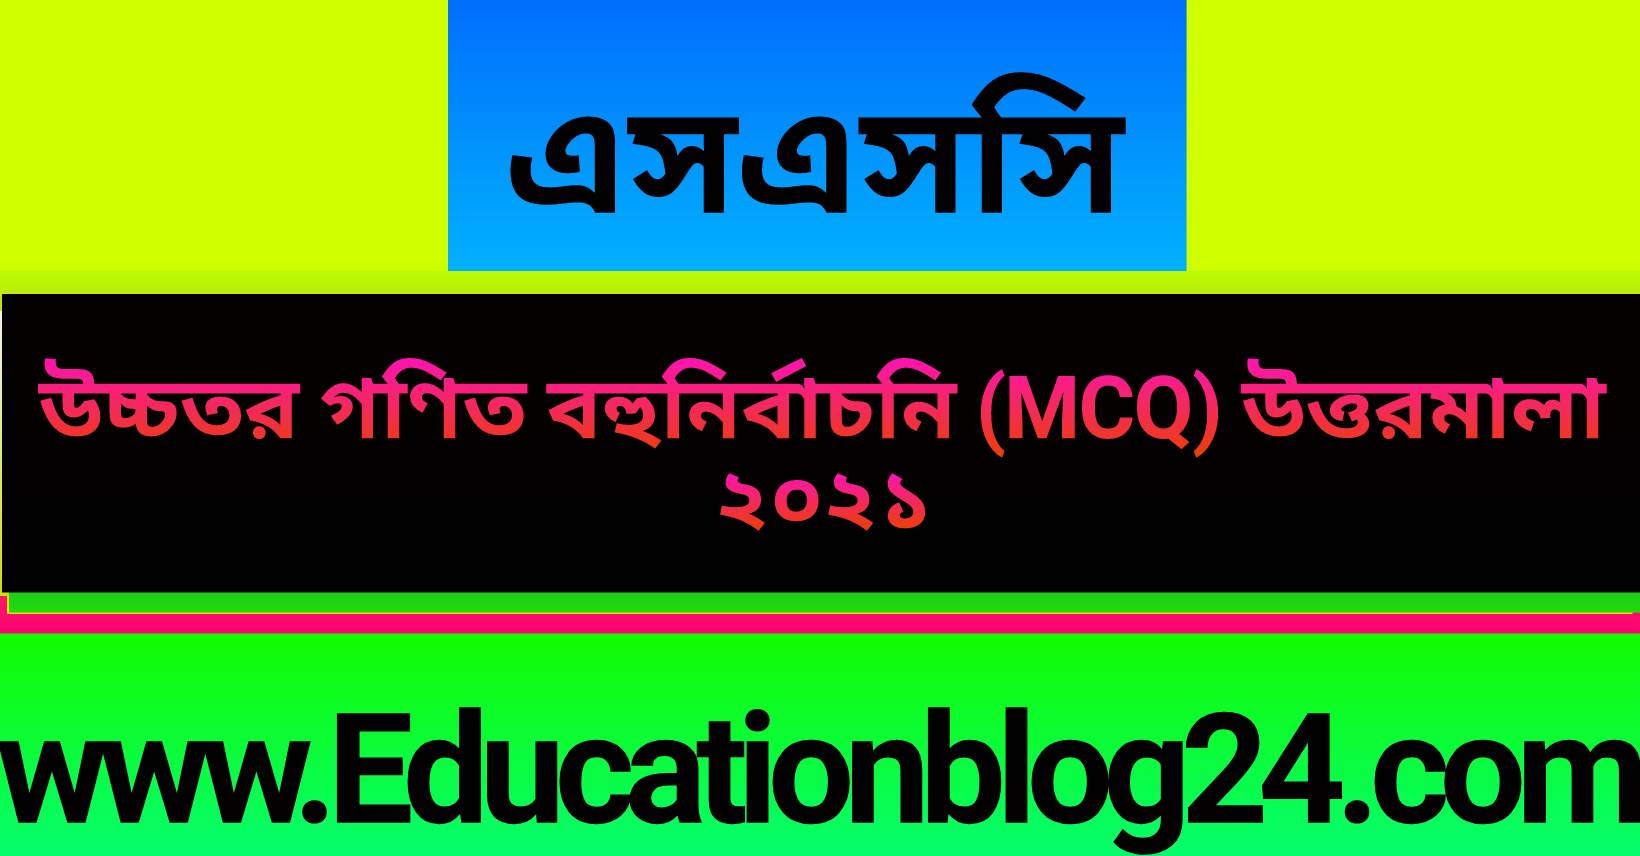 এসএসসি উচ্চতর গণিত বহুনির্বাচনি (MCQ) উত্তরমালা/সমাধান ২০২১ (সকল বোর্ড) |এসএসসি ২০২১ উচ্চতর গণিত MCQ উত্তরমালা | SSC Higher Math MCQ Solution 2021